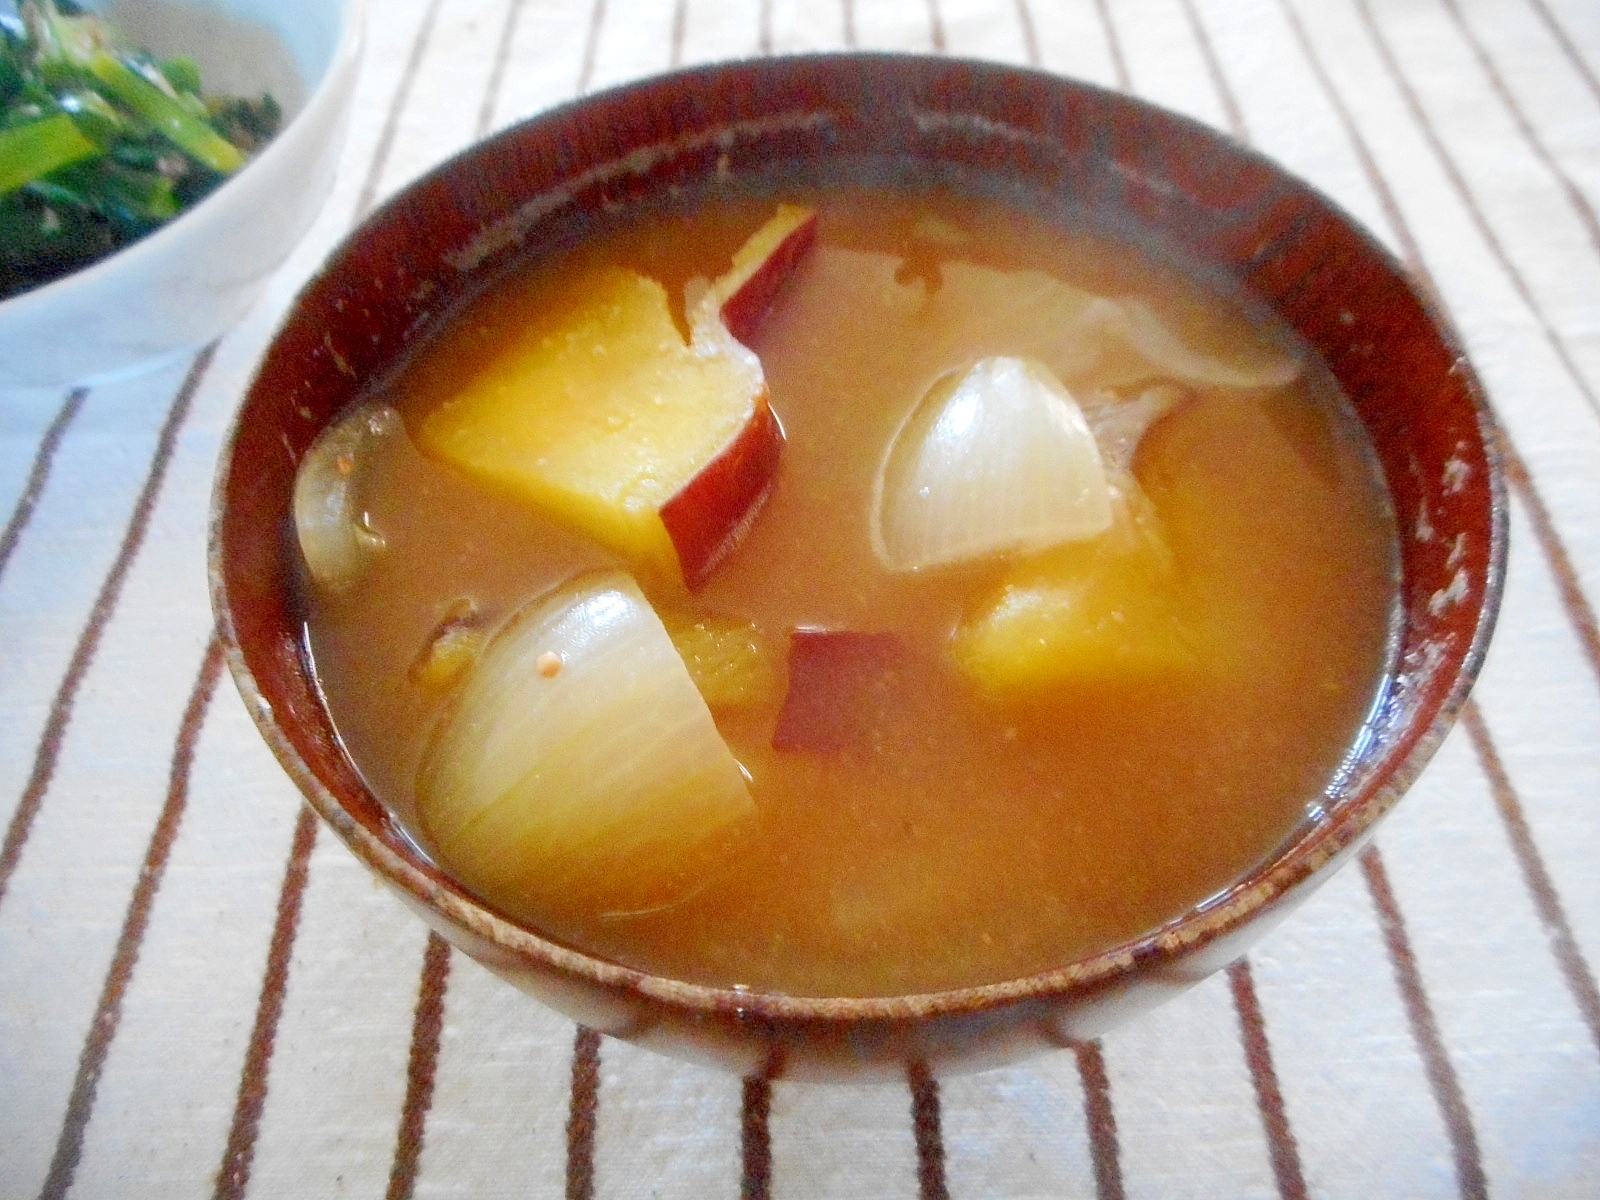 さつま芋と玉ねぎの味噌汁